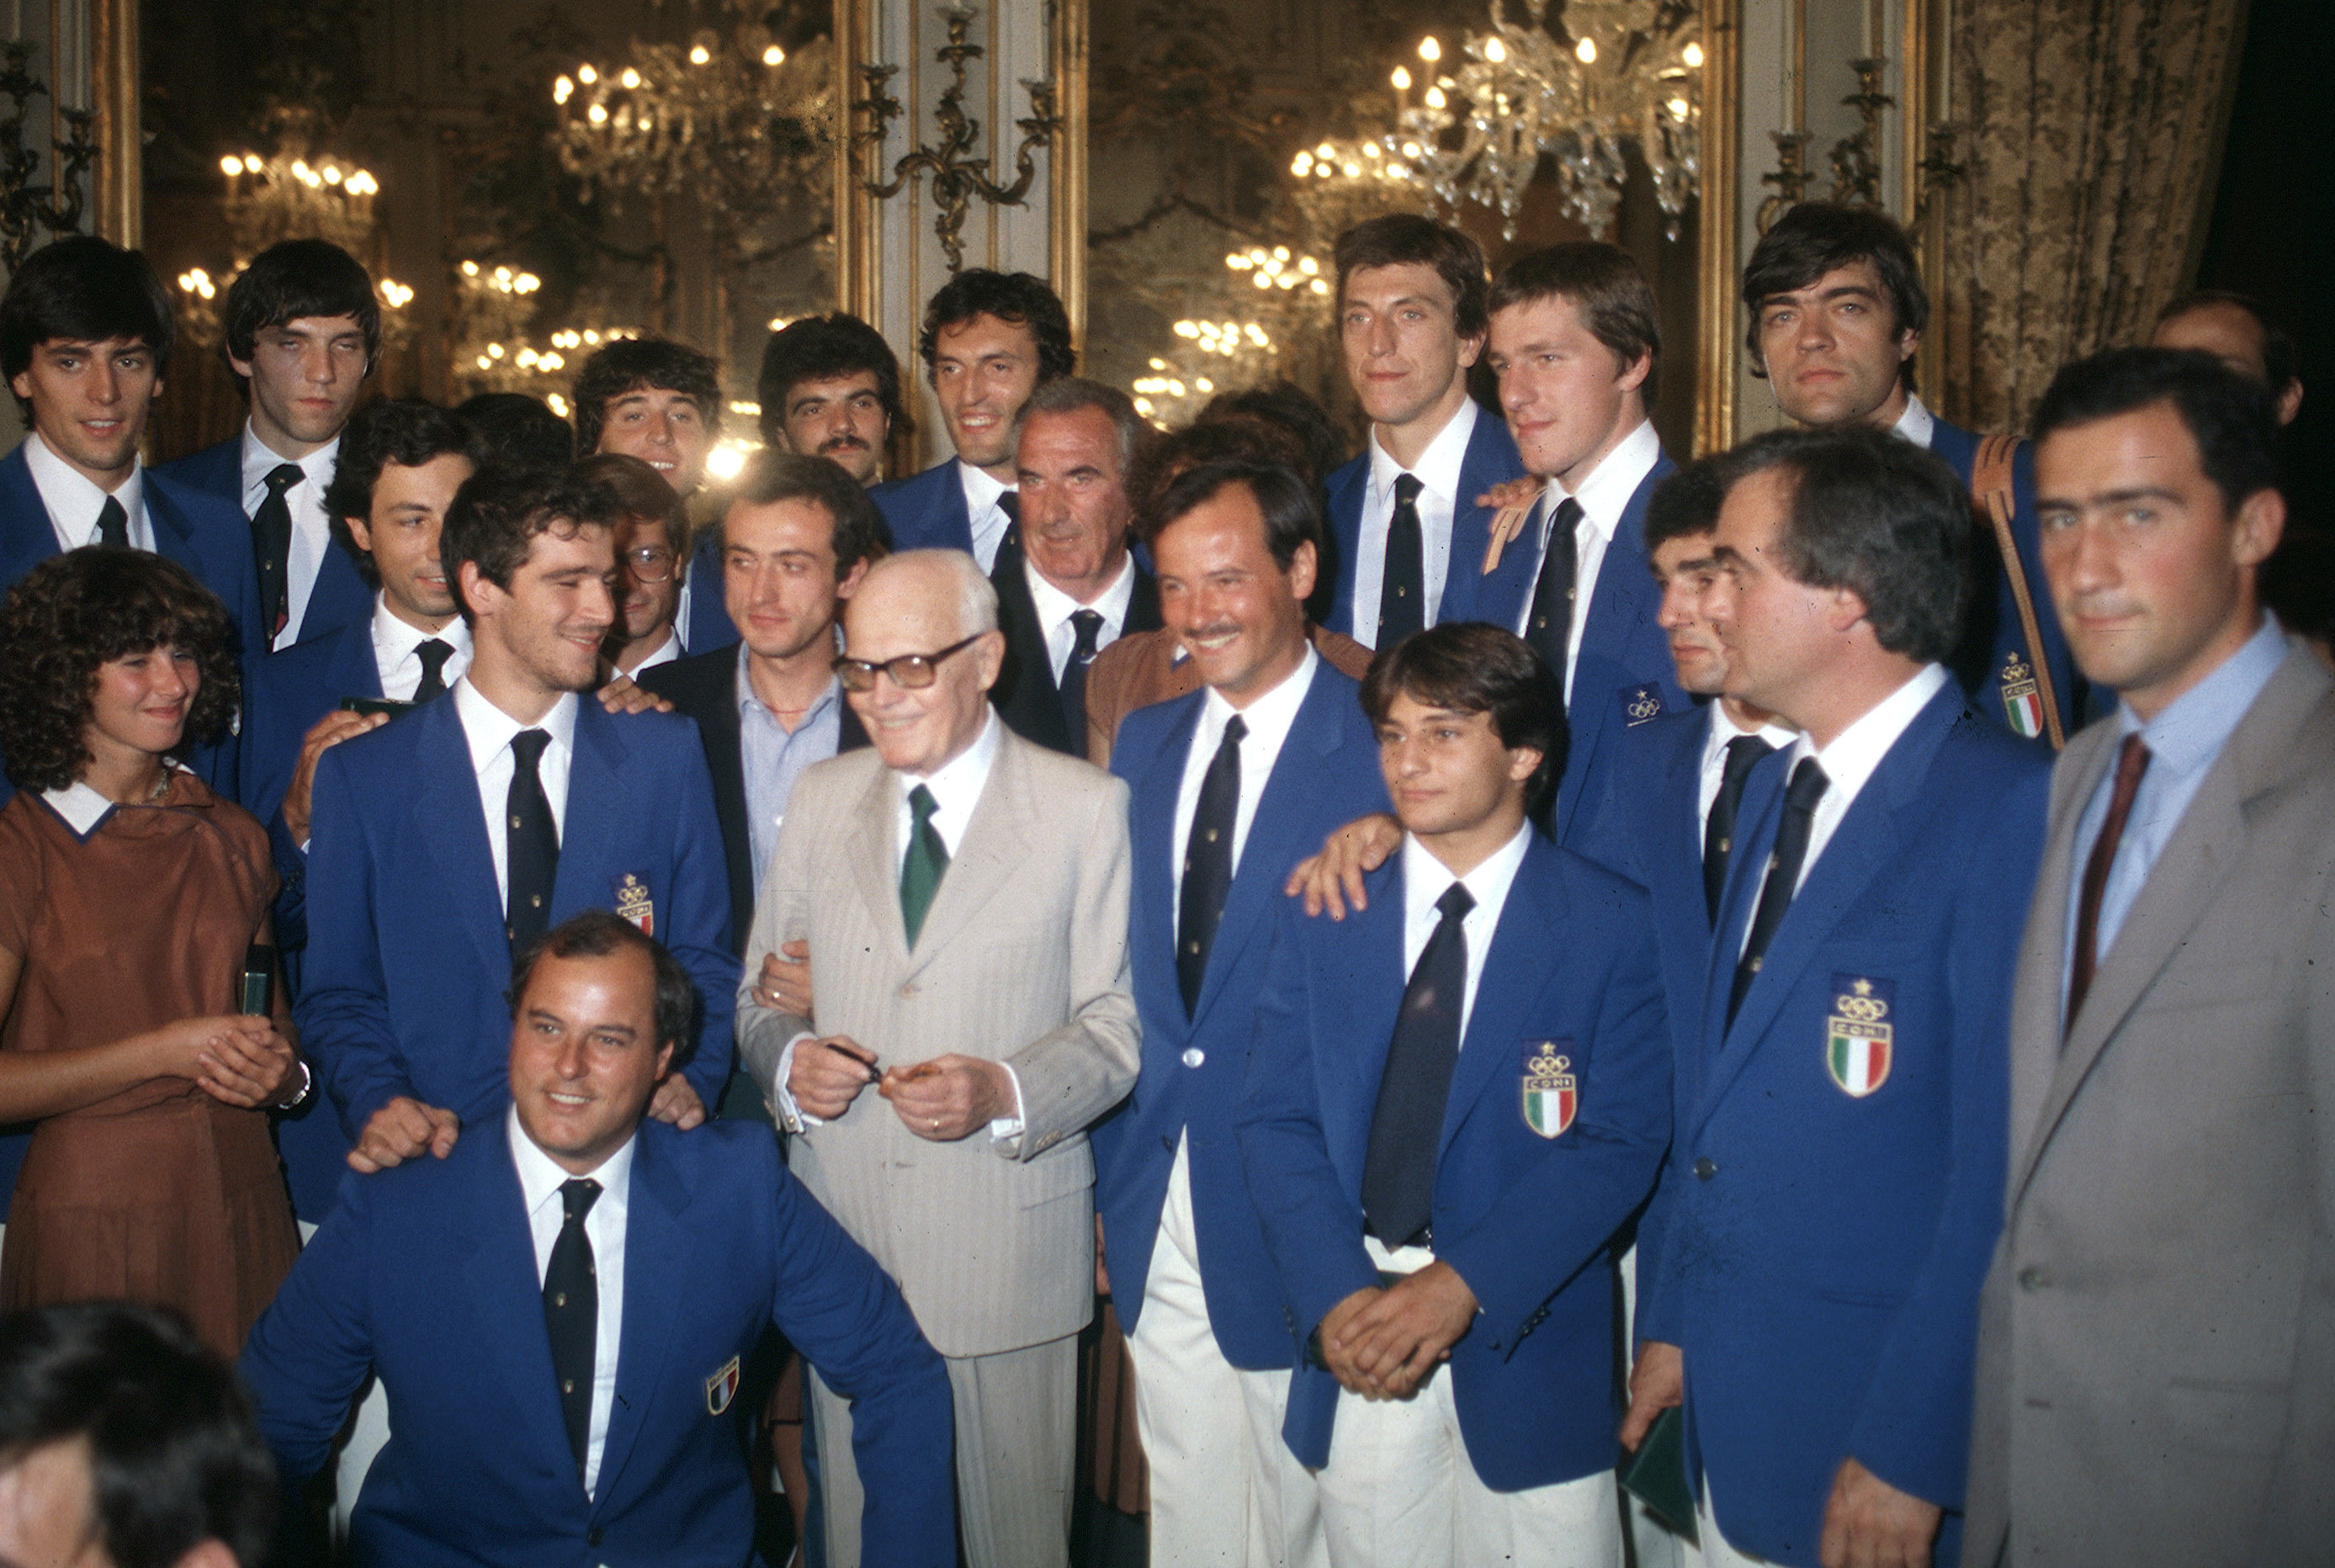 Pertini insieme agli atleti delle Olimpiadi di Mosca del 1980